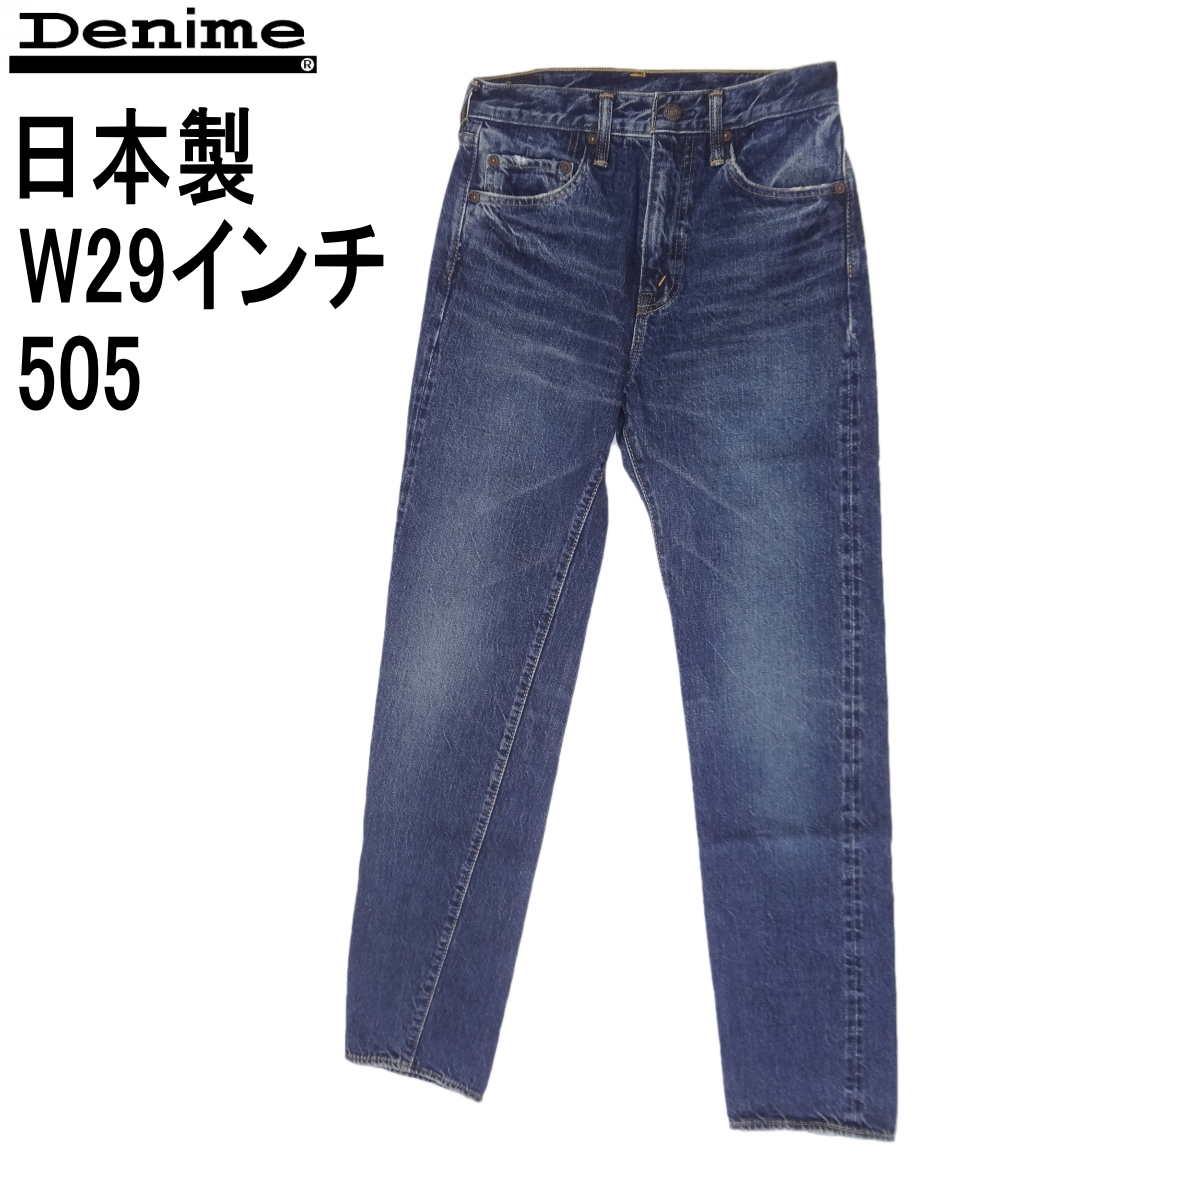 ドゥニーム Denime 505 ジーンズ ブルー 日本製 赤耳 W29インチ